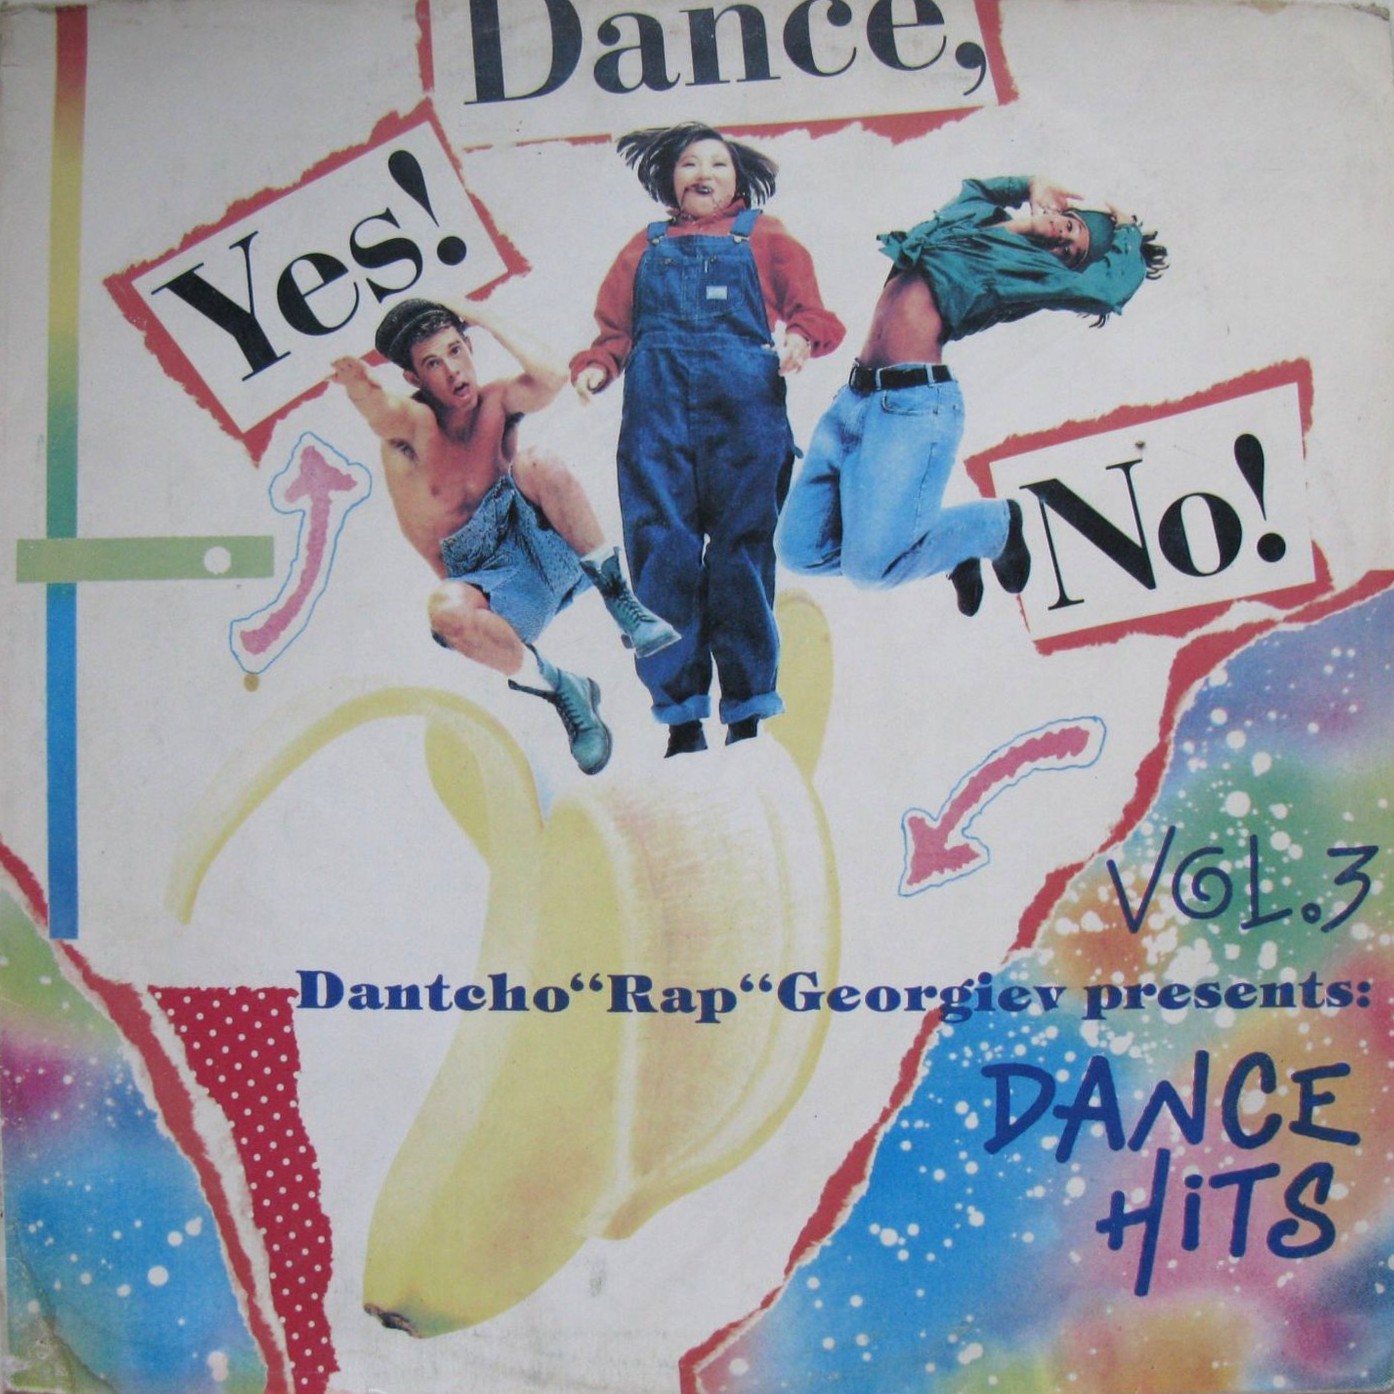 Dantcho "Rap" Georgiev presents: Dance hits. Vol. 3